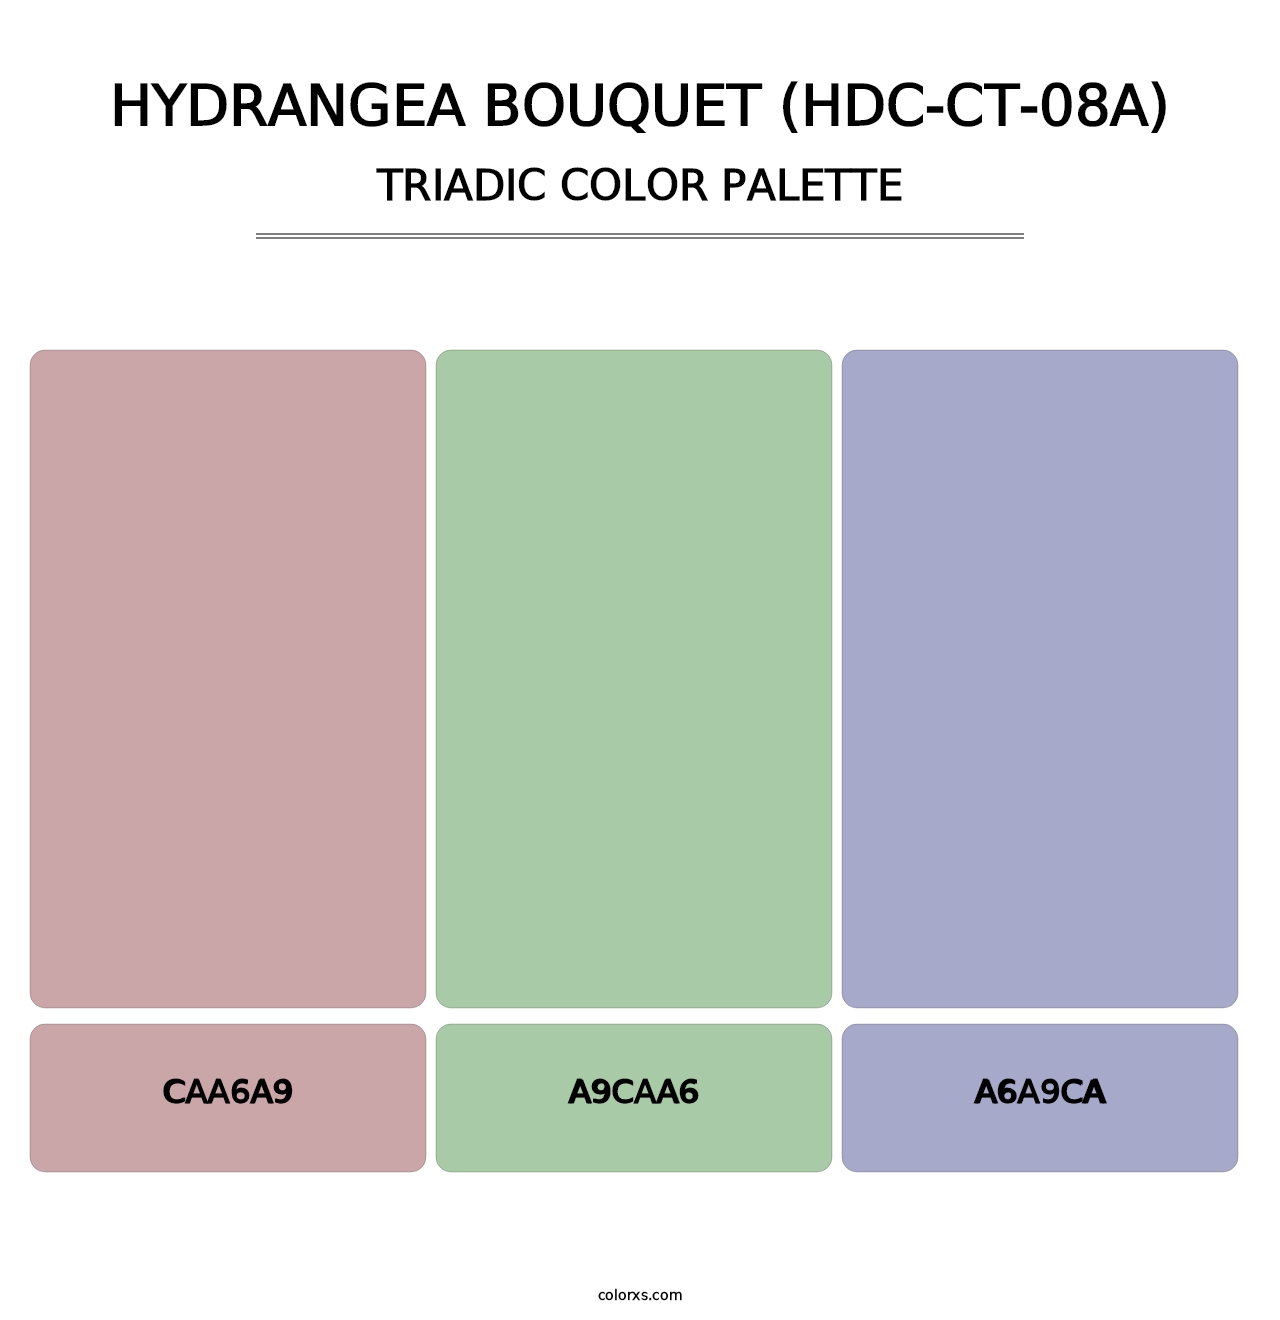 Hydrangea Bouquet (HDC-CT-08A) - Triadic Color Palette